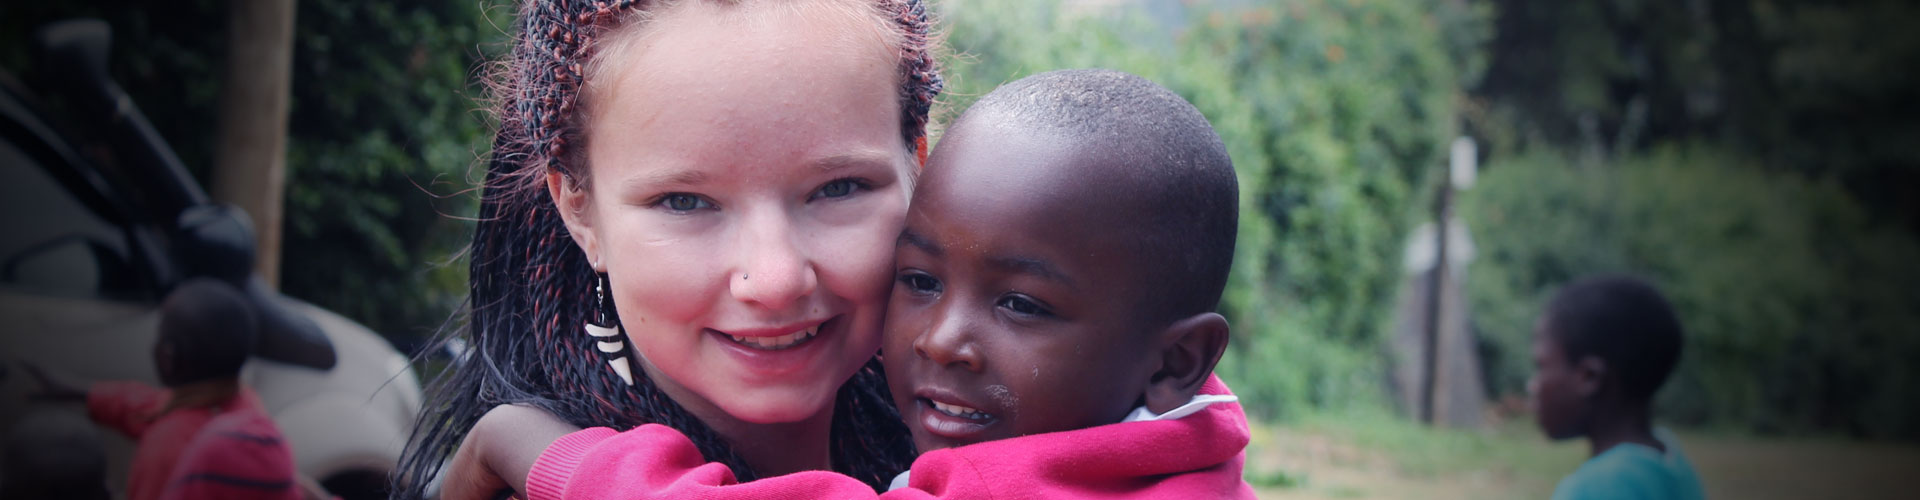 Programa de voluntariado de cuidado infantil en Kenia